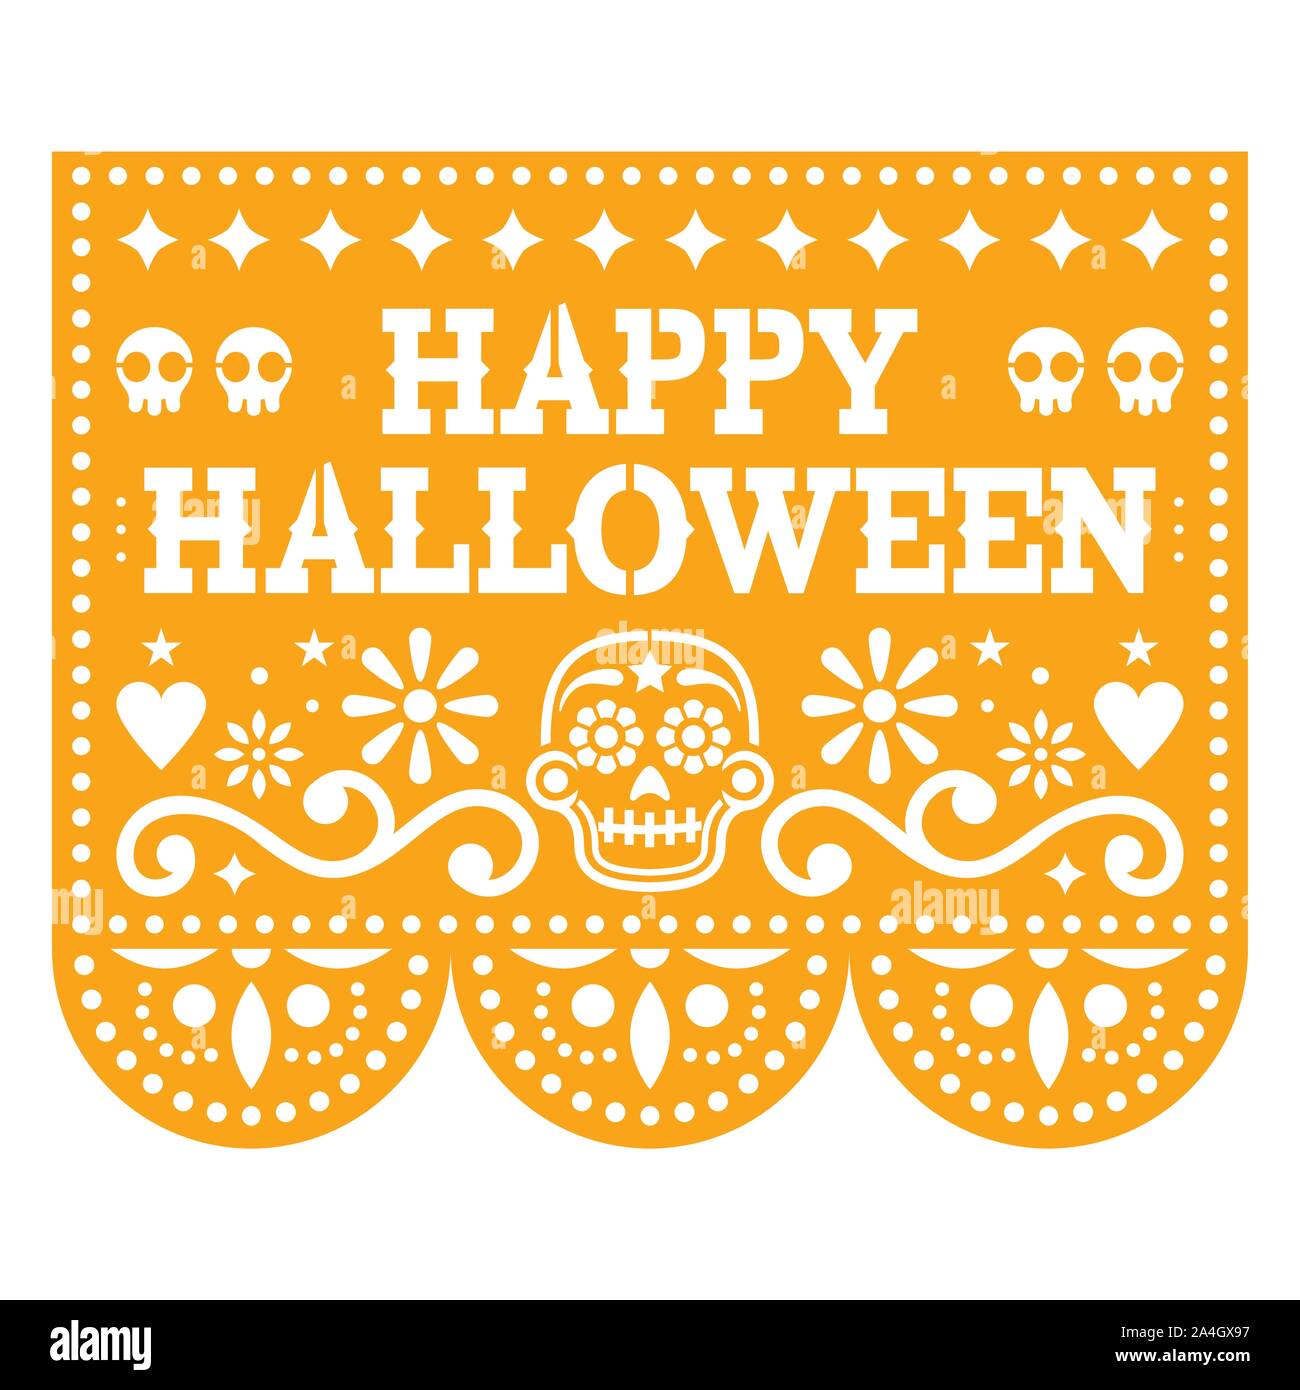 Happy Halloween papel picado design avec des crânes de sucre mexicain, découper le papier de fond de fleurs et guirlande de crânes Illustration de Vecteur